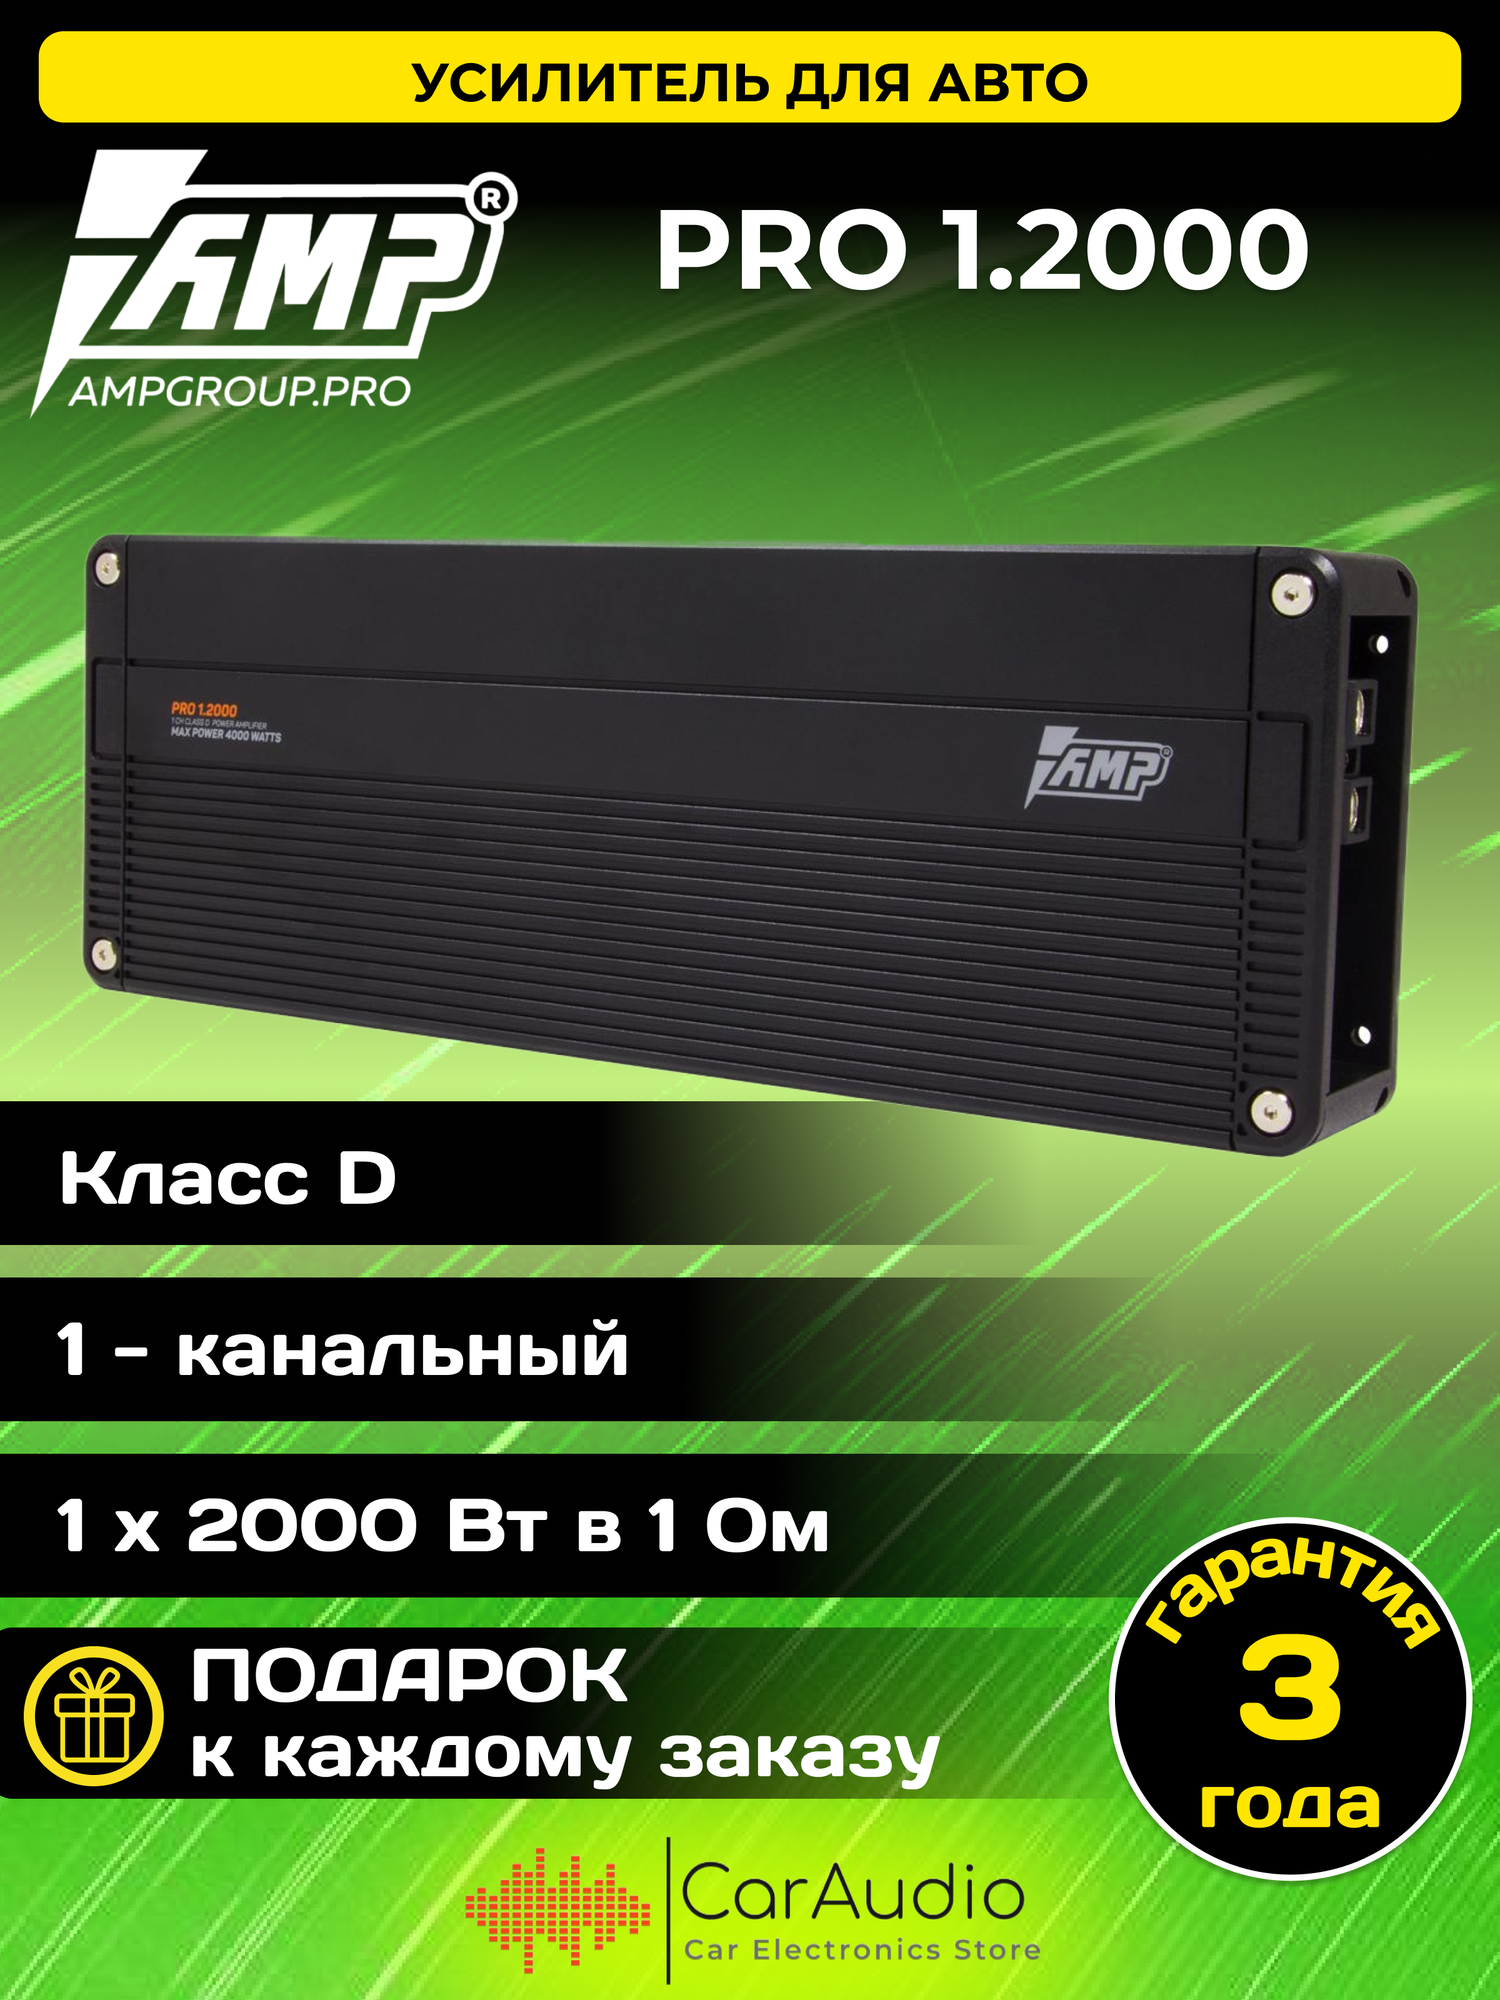 Усилитель AMP PRO 1.2000